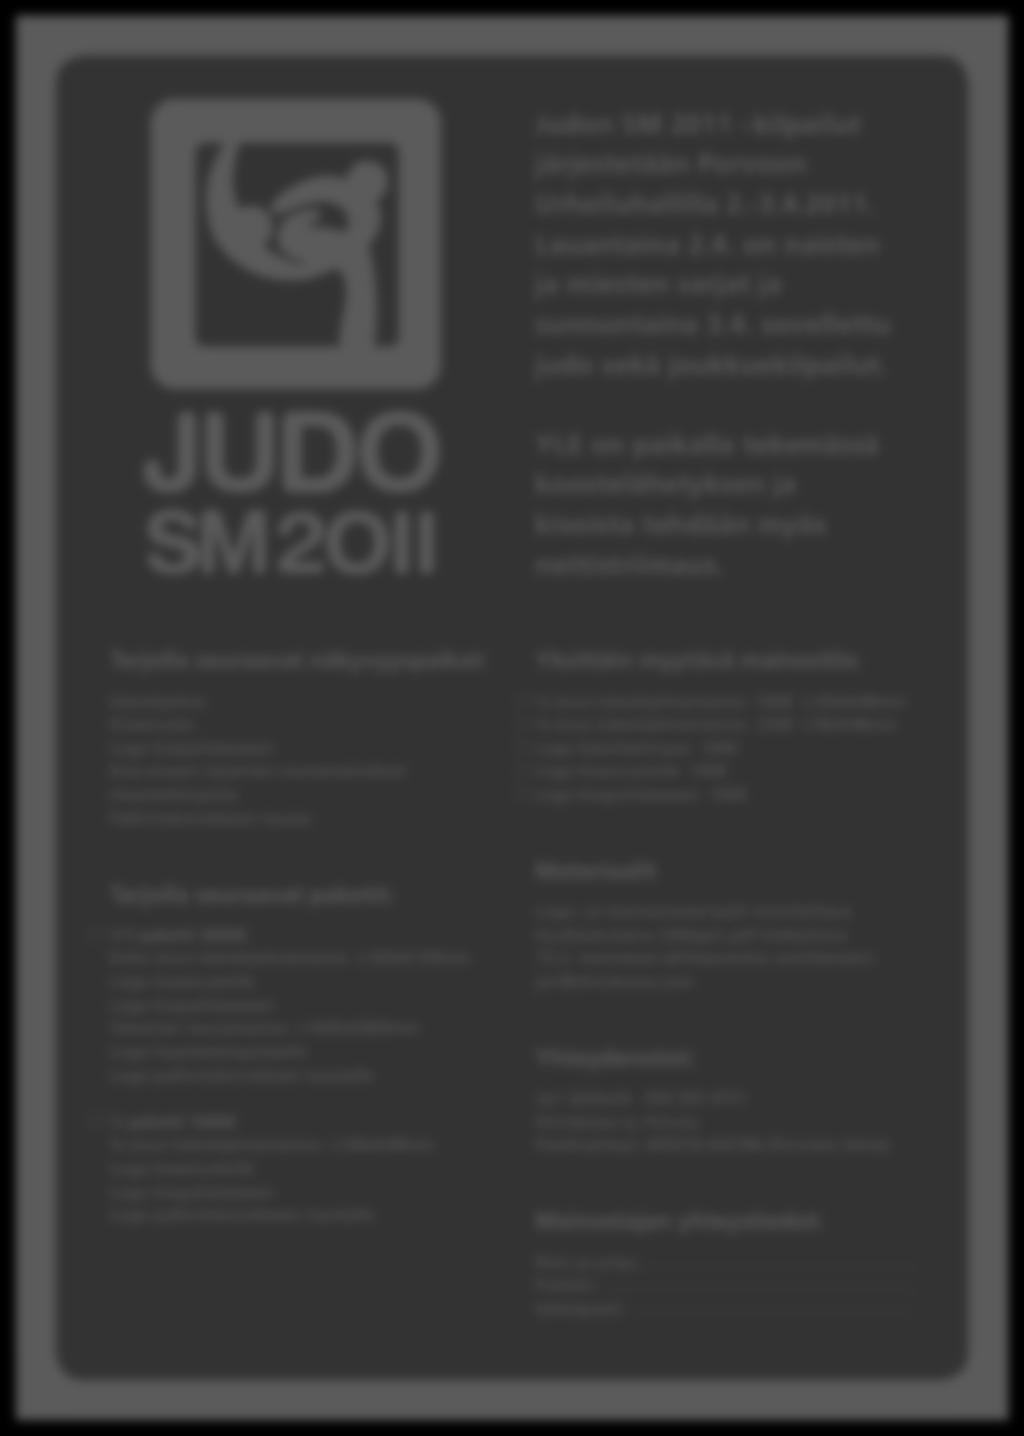 Liite 1 6 (11) Judo SM2011 kisoihin toteutetut materiaalit: mediakortti Judon SM 2011 kilpailut järjestetään Porvoon Urheiluhallilla 2.-3.4.2011. Lauantaina 2.4. on naisten ja miesten sarjat ja sunnuntaina 3.